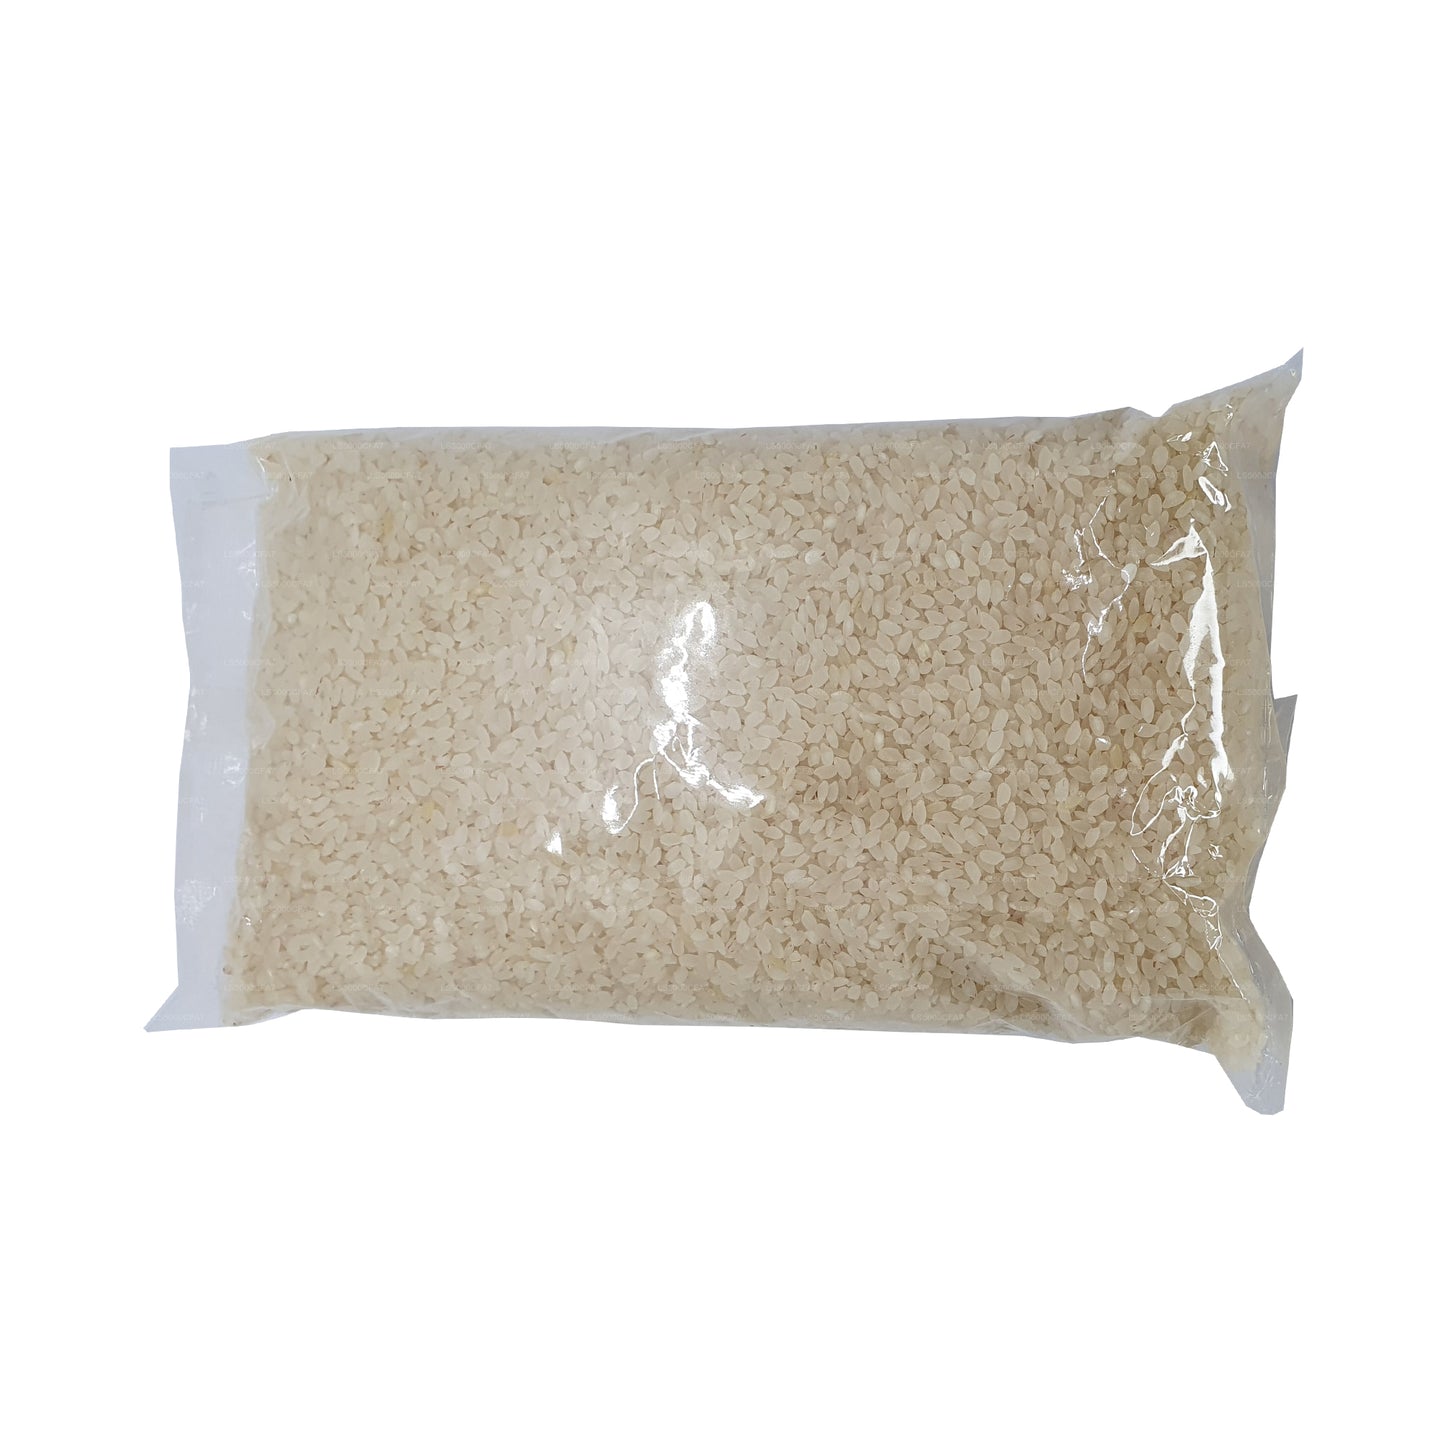 vCeylon Maa Wee Rice (3kg)